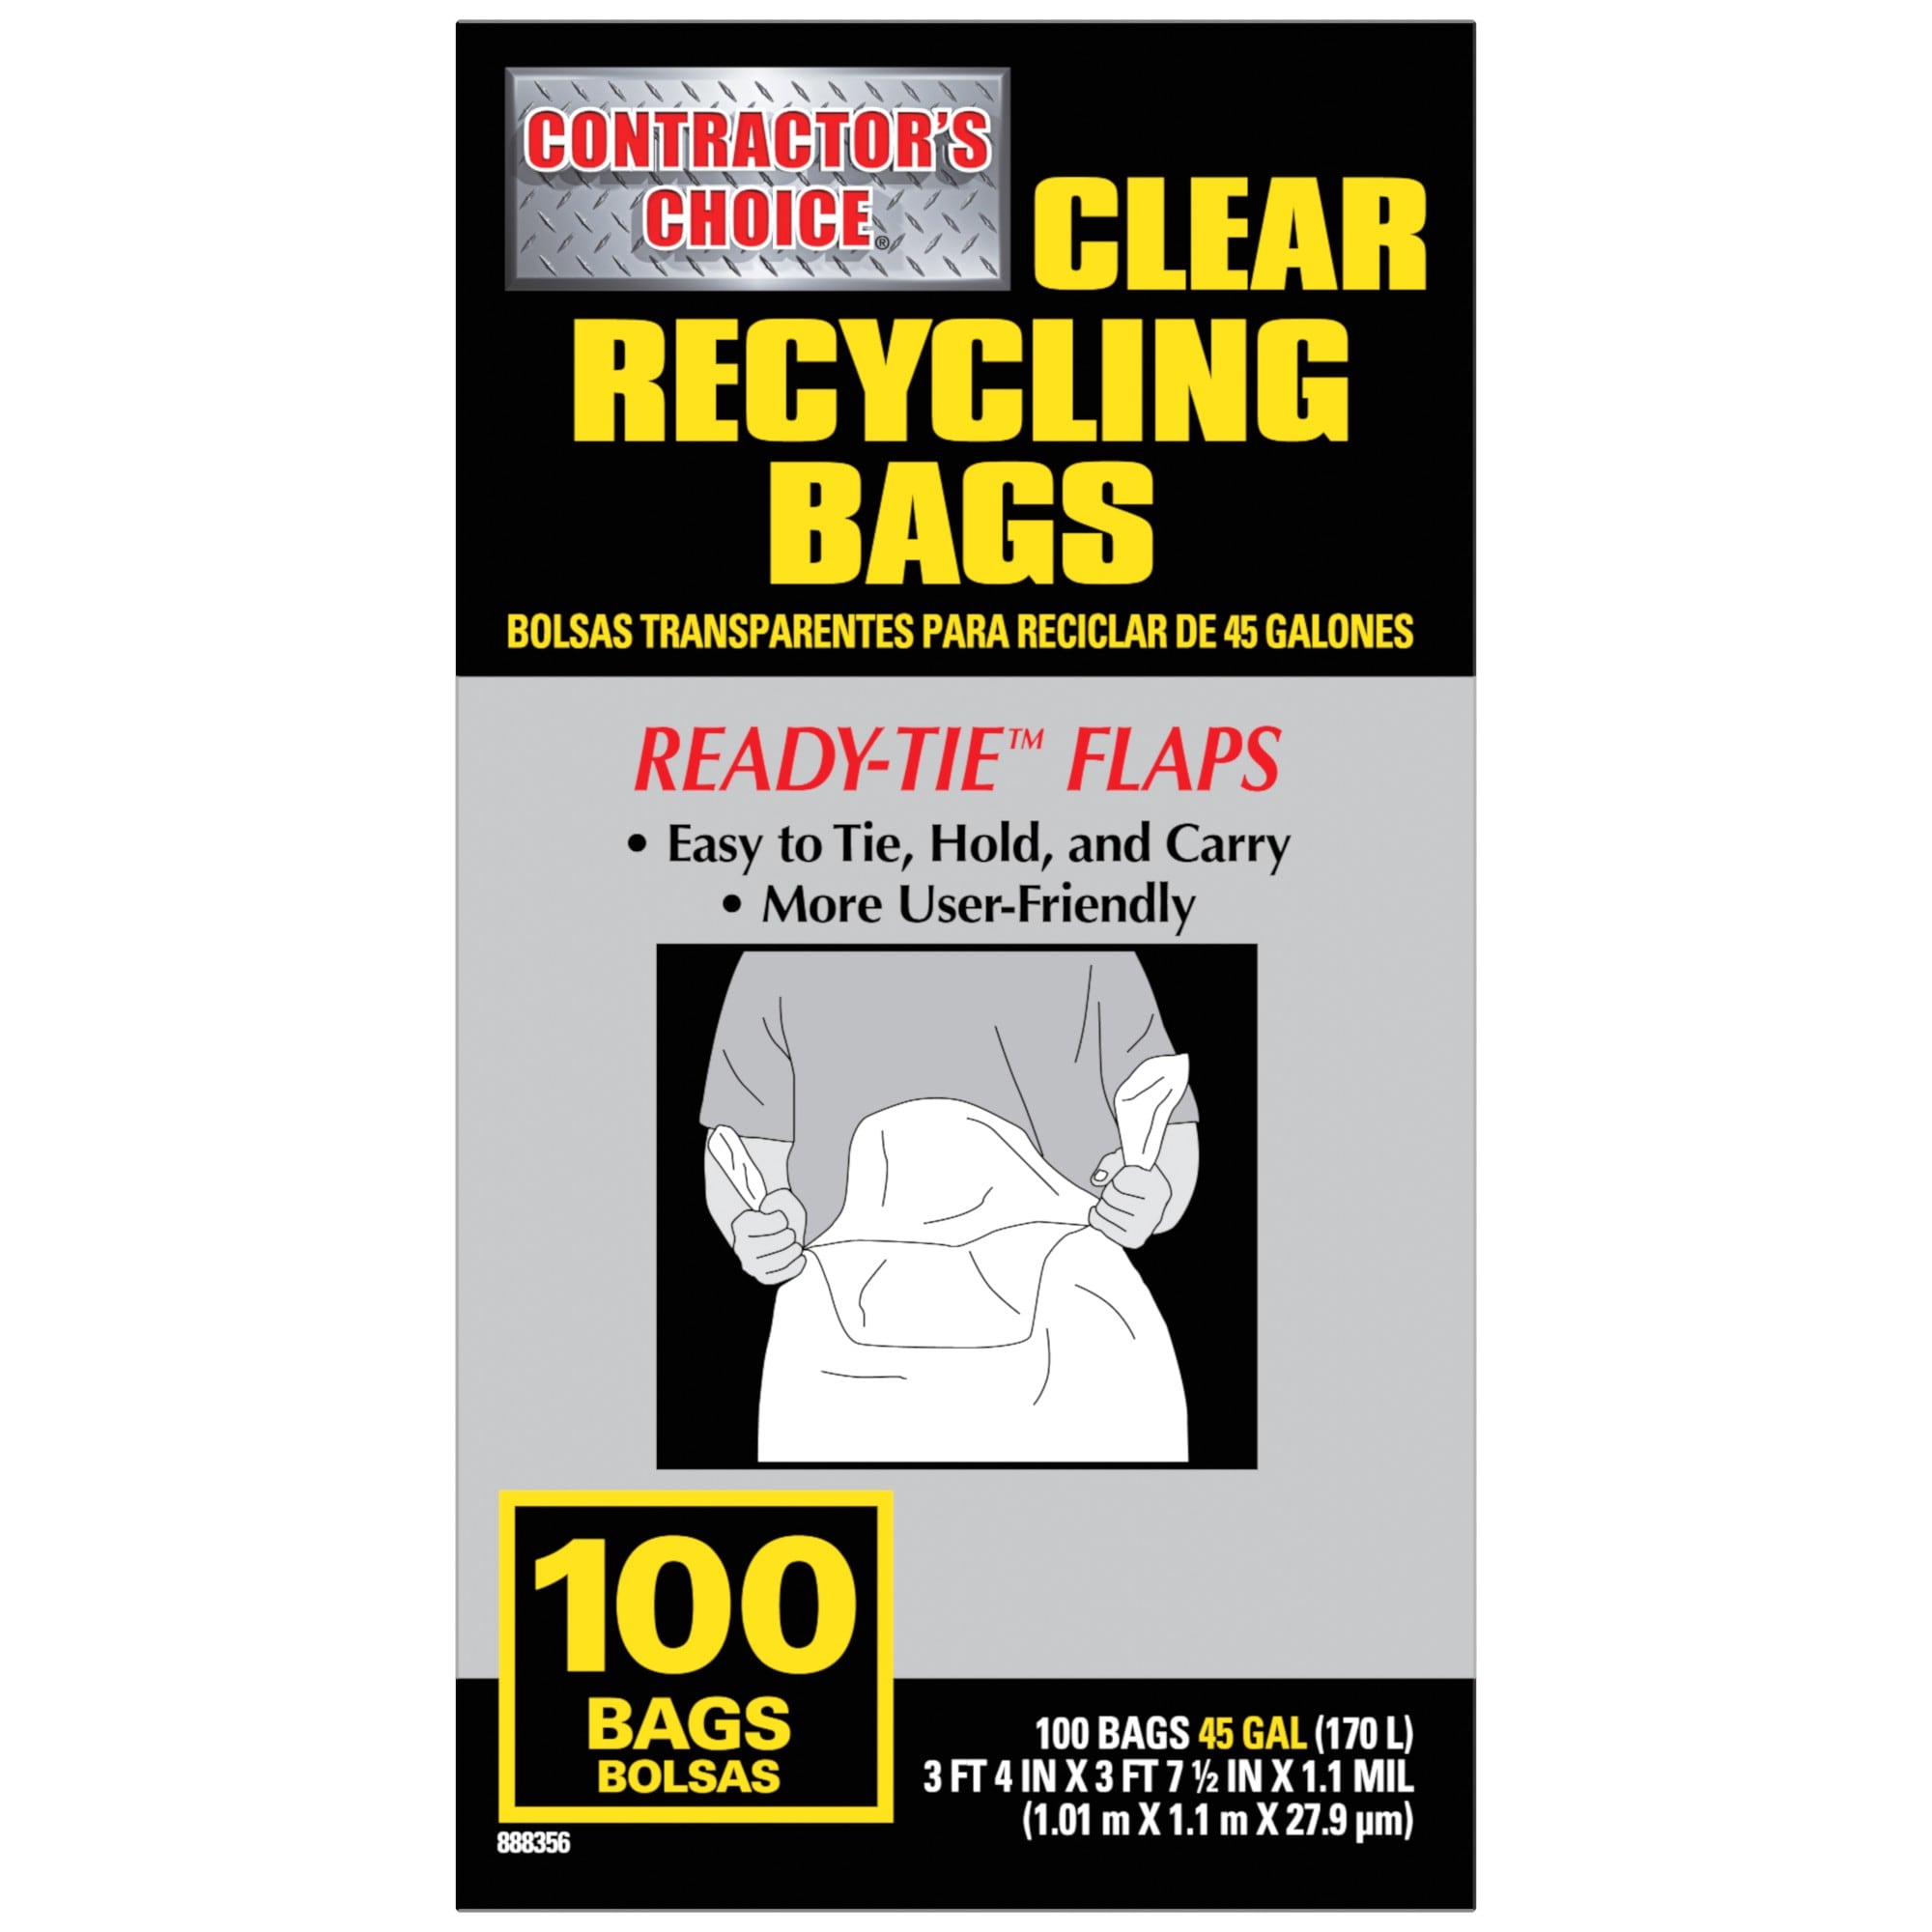 Lavex Industrial Contractor Trash Bag (45 Gallon)